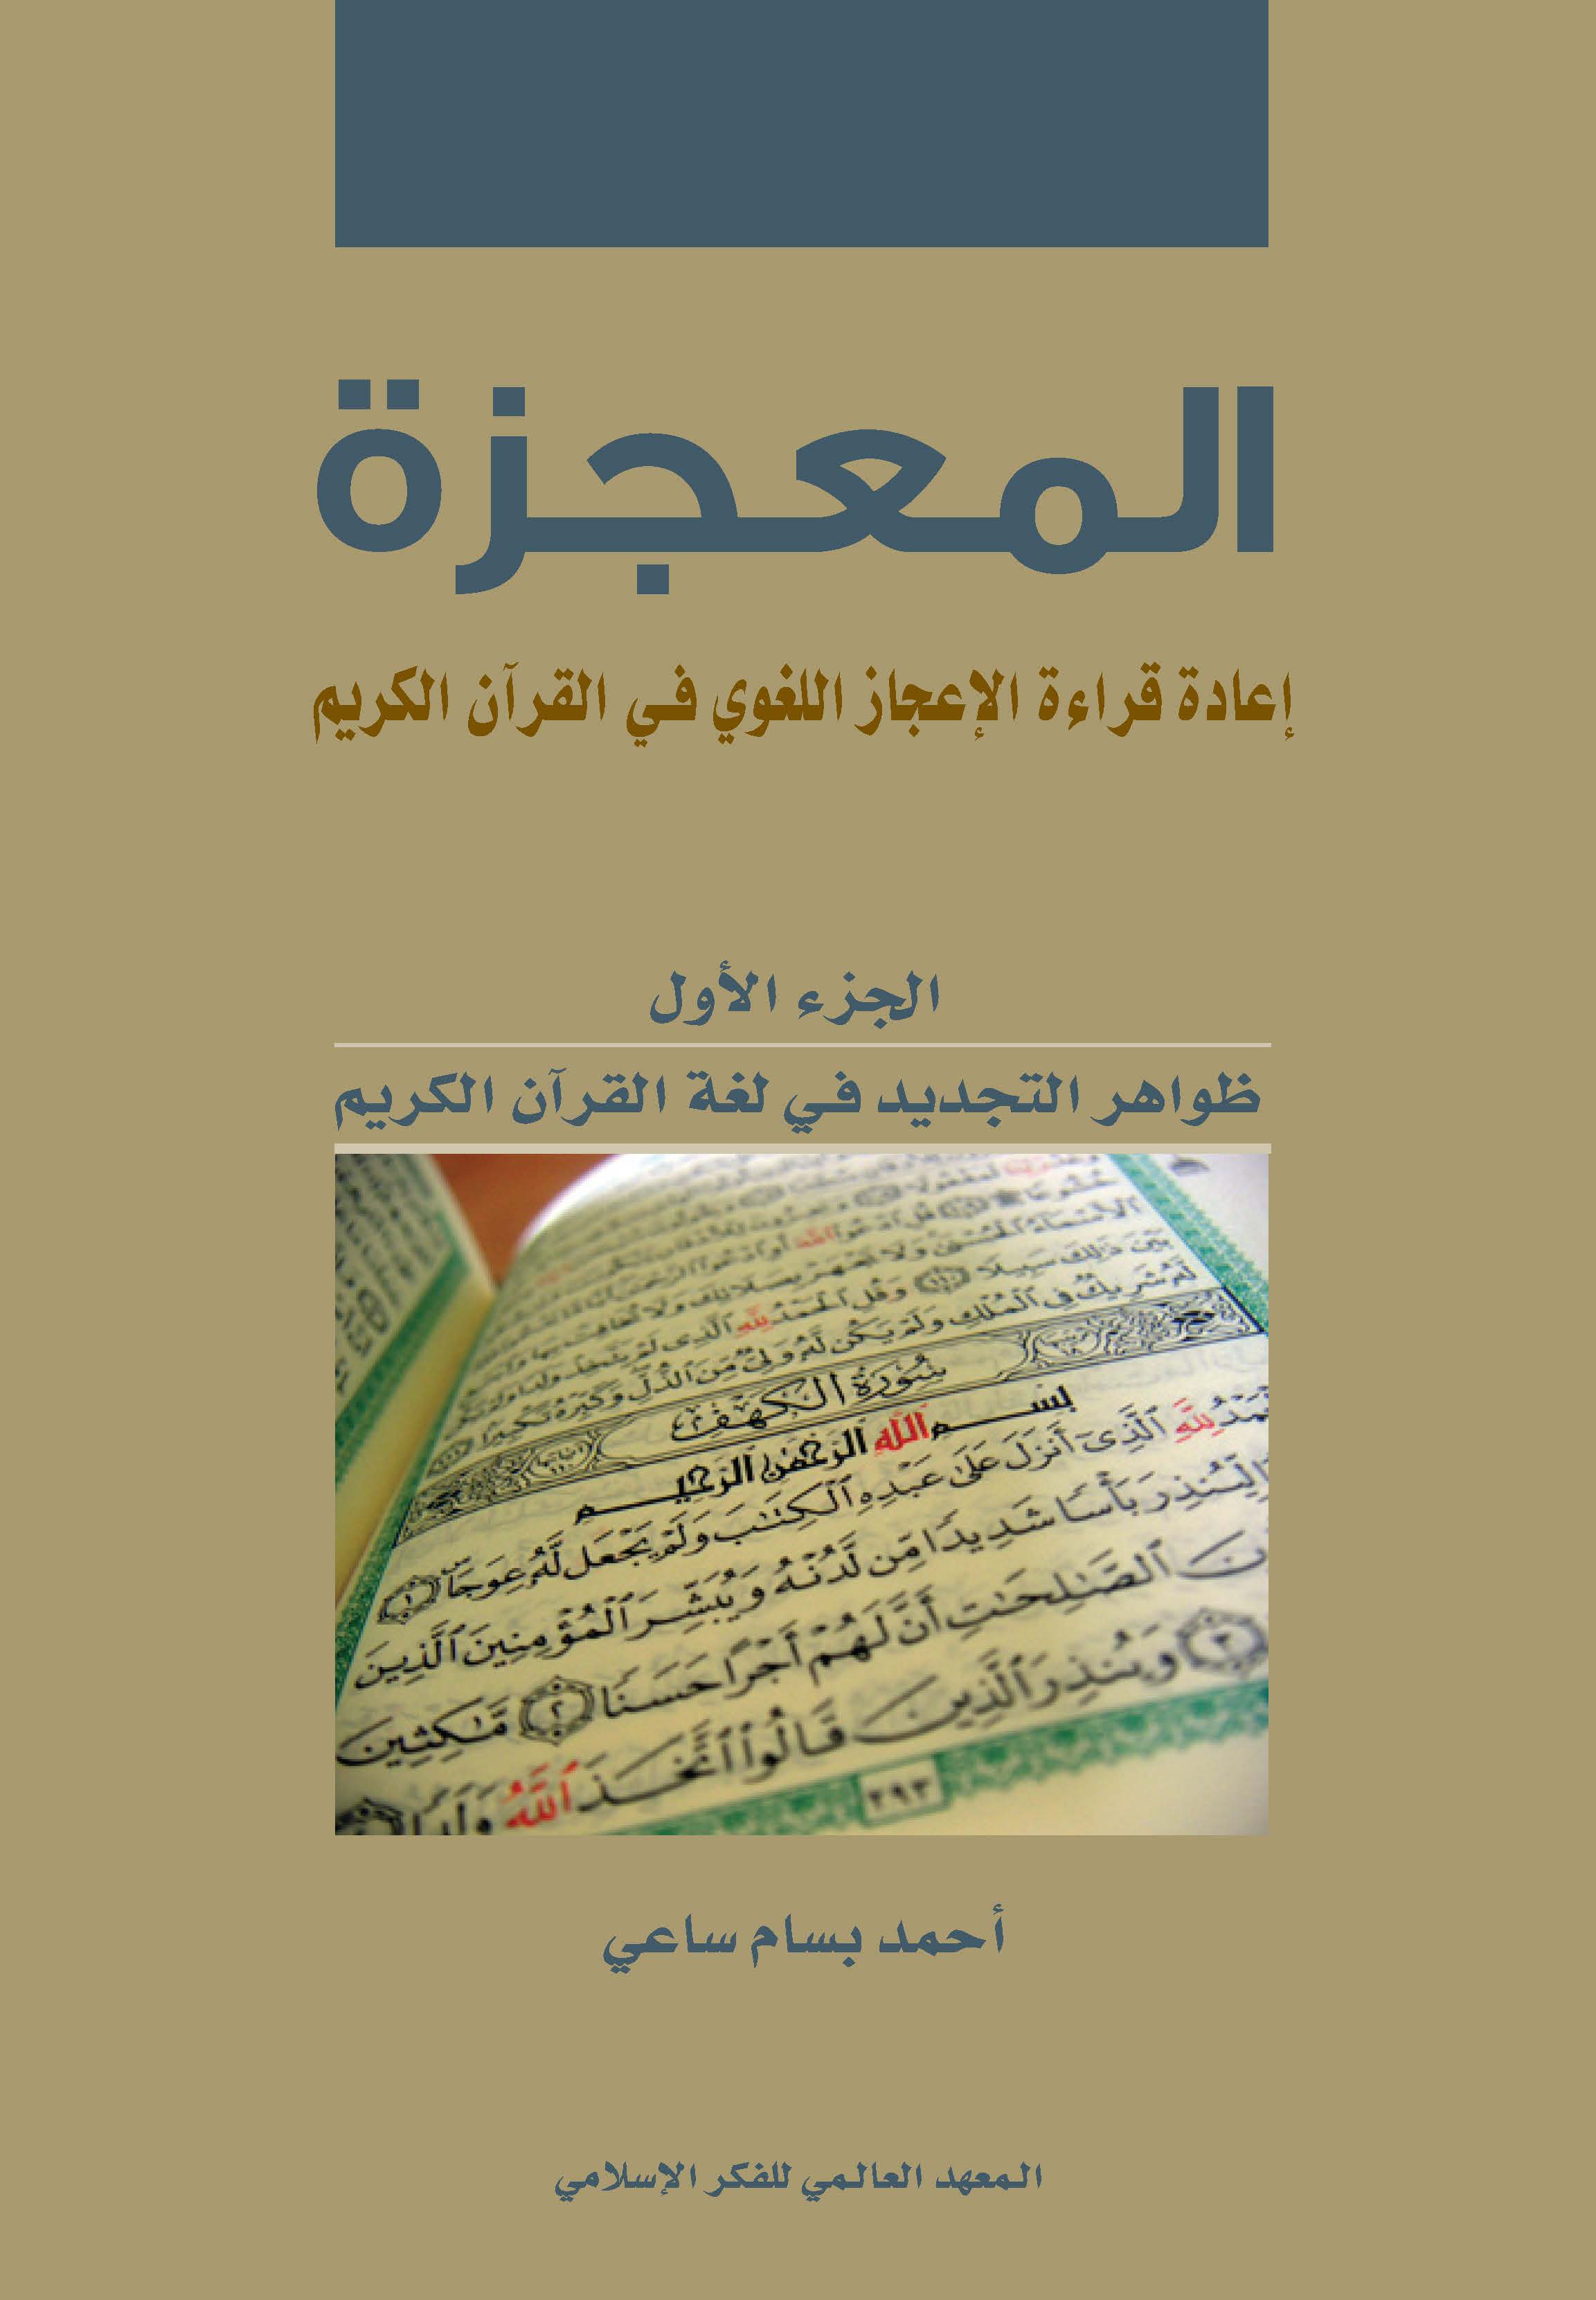 المعجزة الجزء الأول: إعادة قراءة الإعجاز اللغوي في القرآن الكريم (ظواهر التجديد في لغة القرآن الكريم)